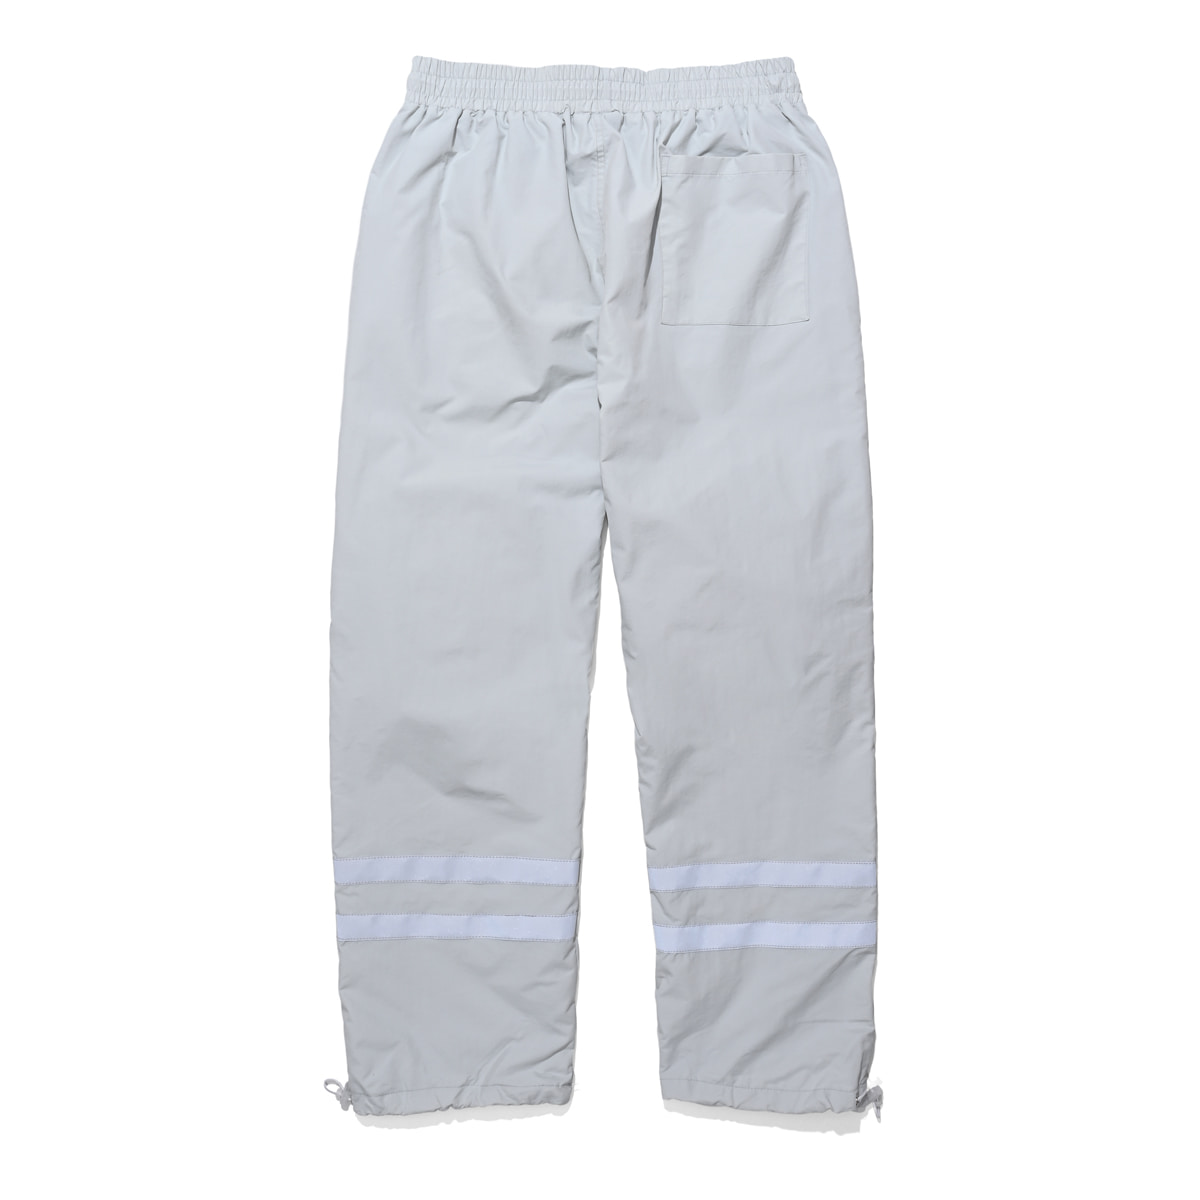 8 pocket smock pants (gray)